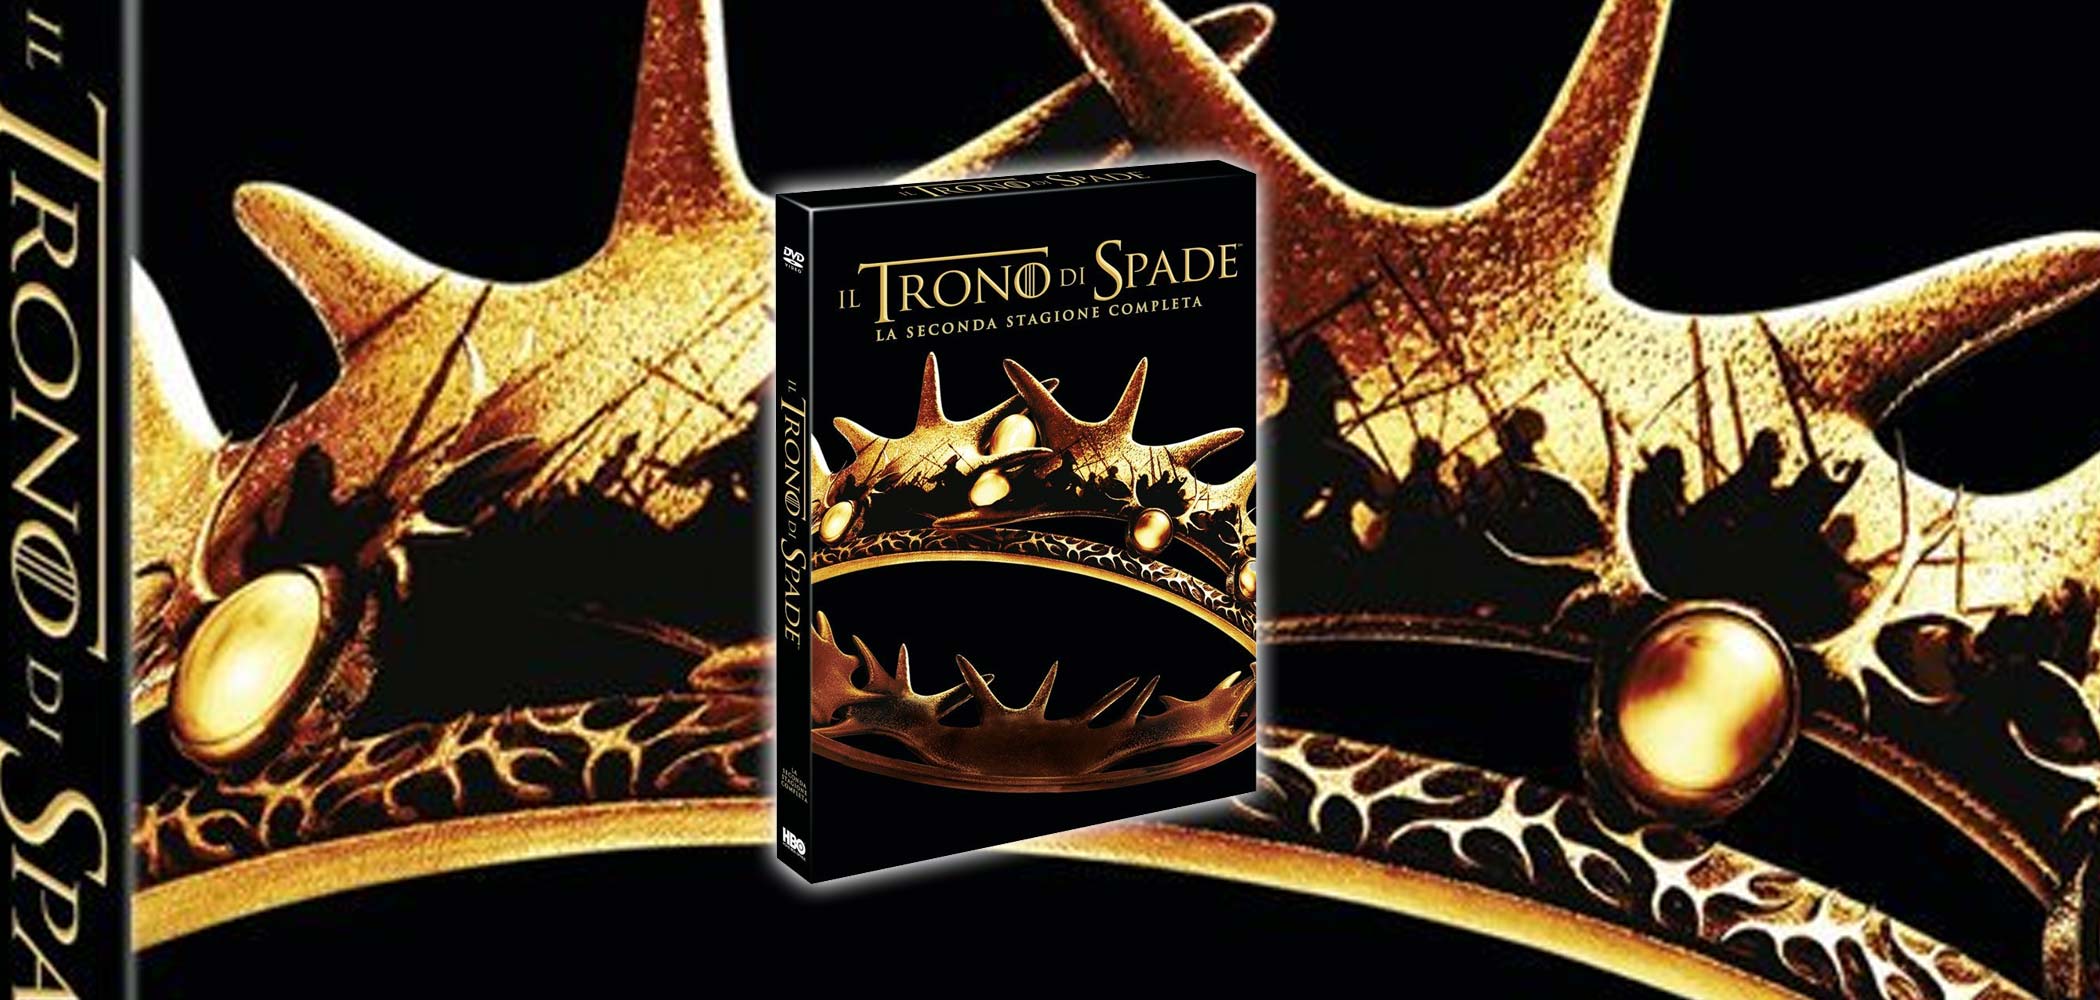 Il DVD de Il trono di spade, seconda stagione completa